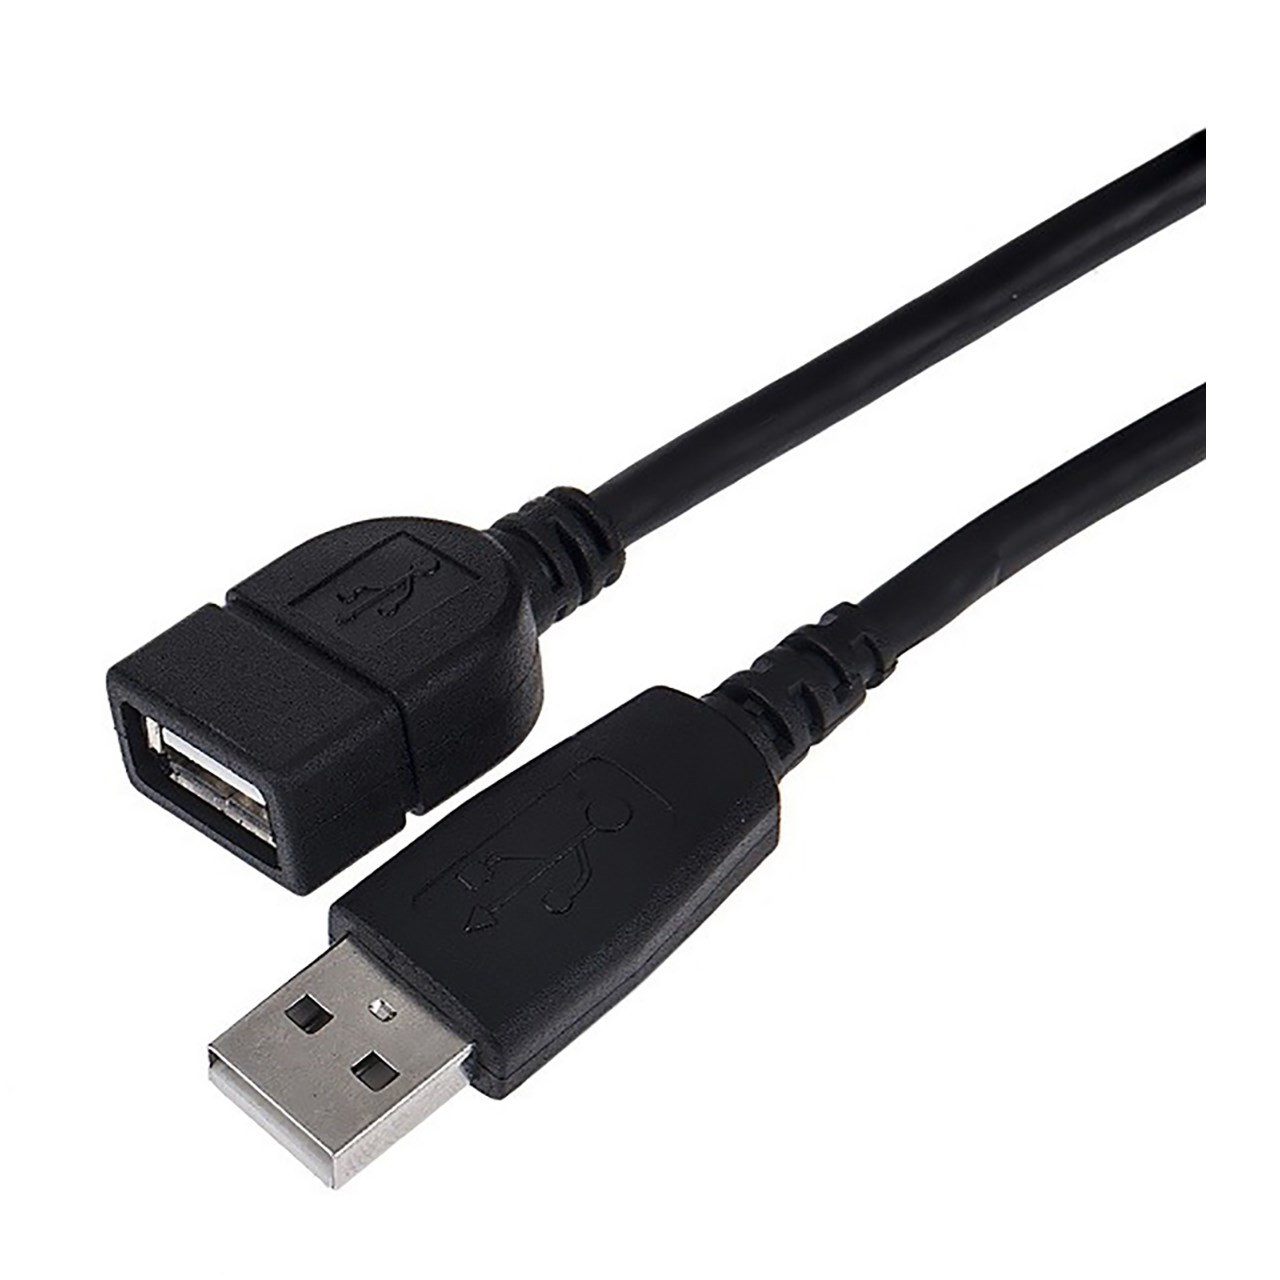 کابل افزایش طول USB 2.0 پی نت به طول 5 متر